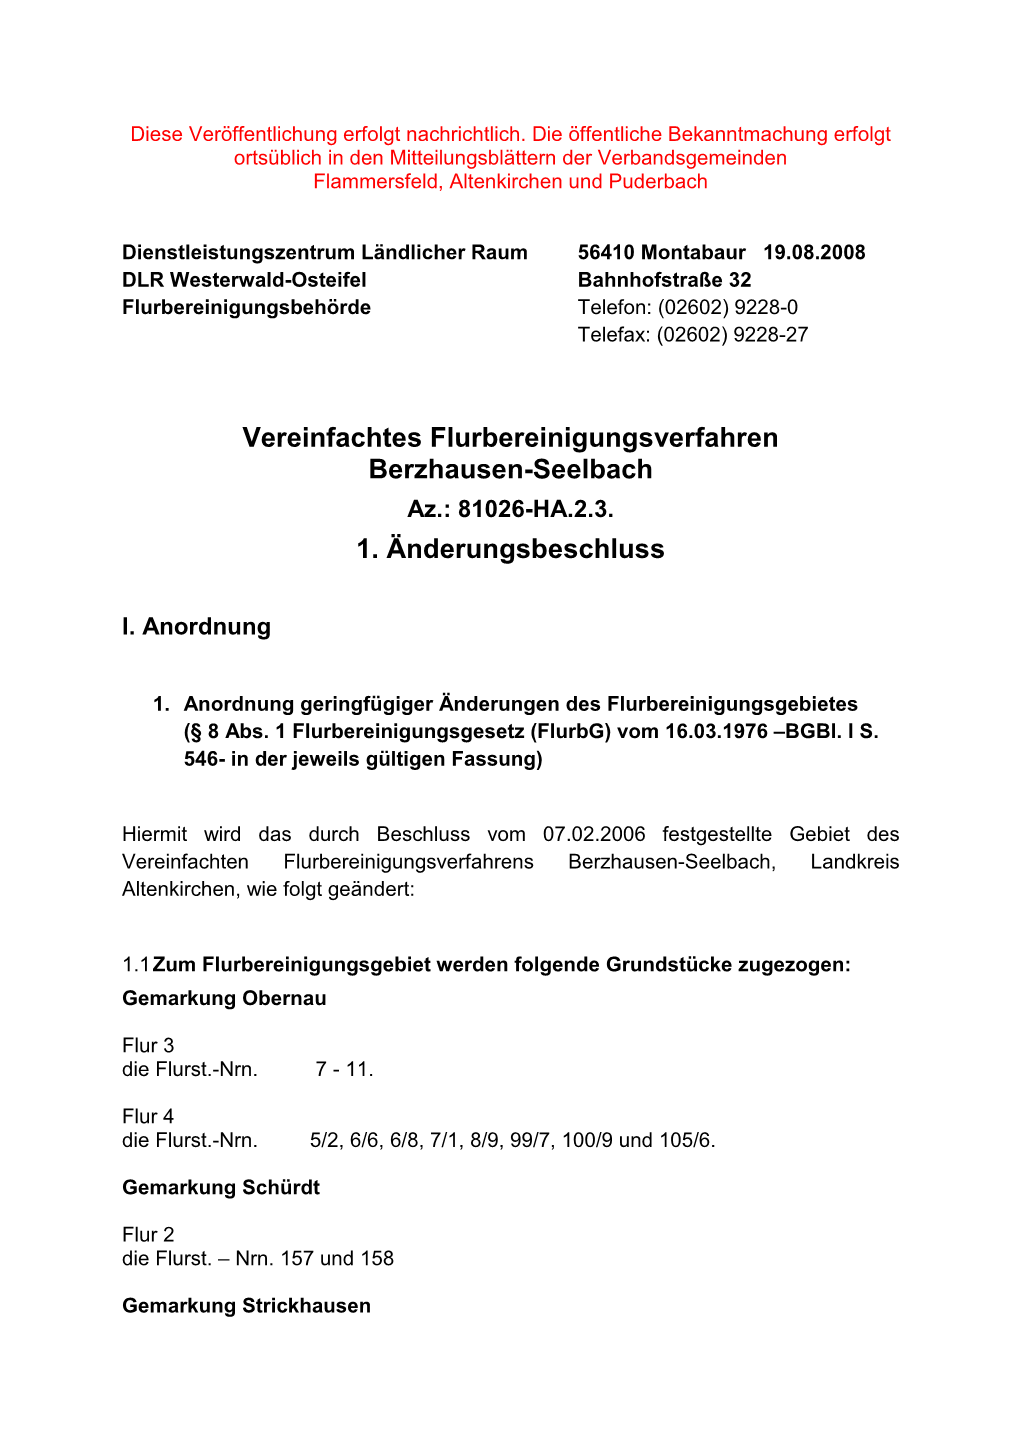 Vereinfachtes Flurbereinigungsverfahren Berzhausen-Seelbach Az.: 81026-HA.2.3